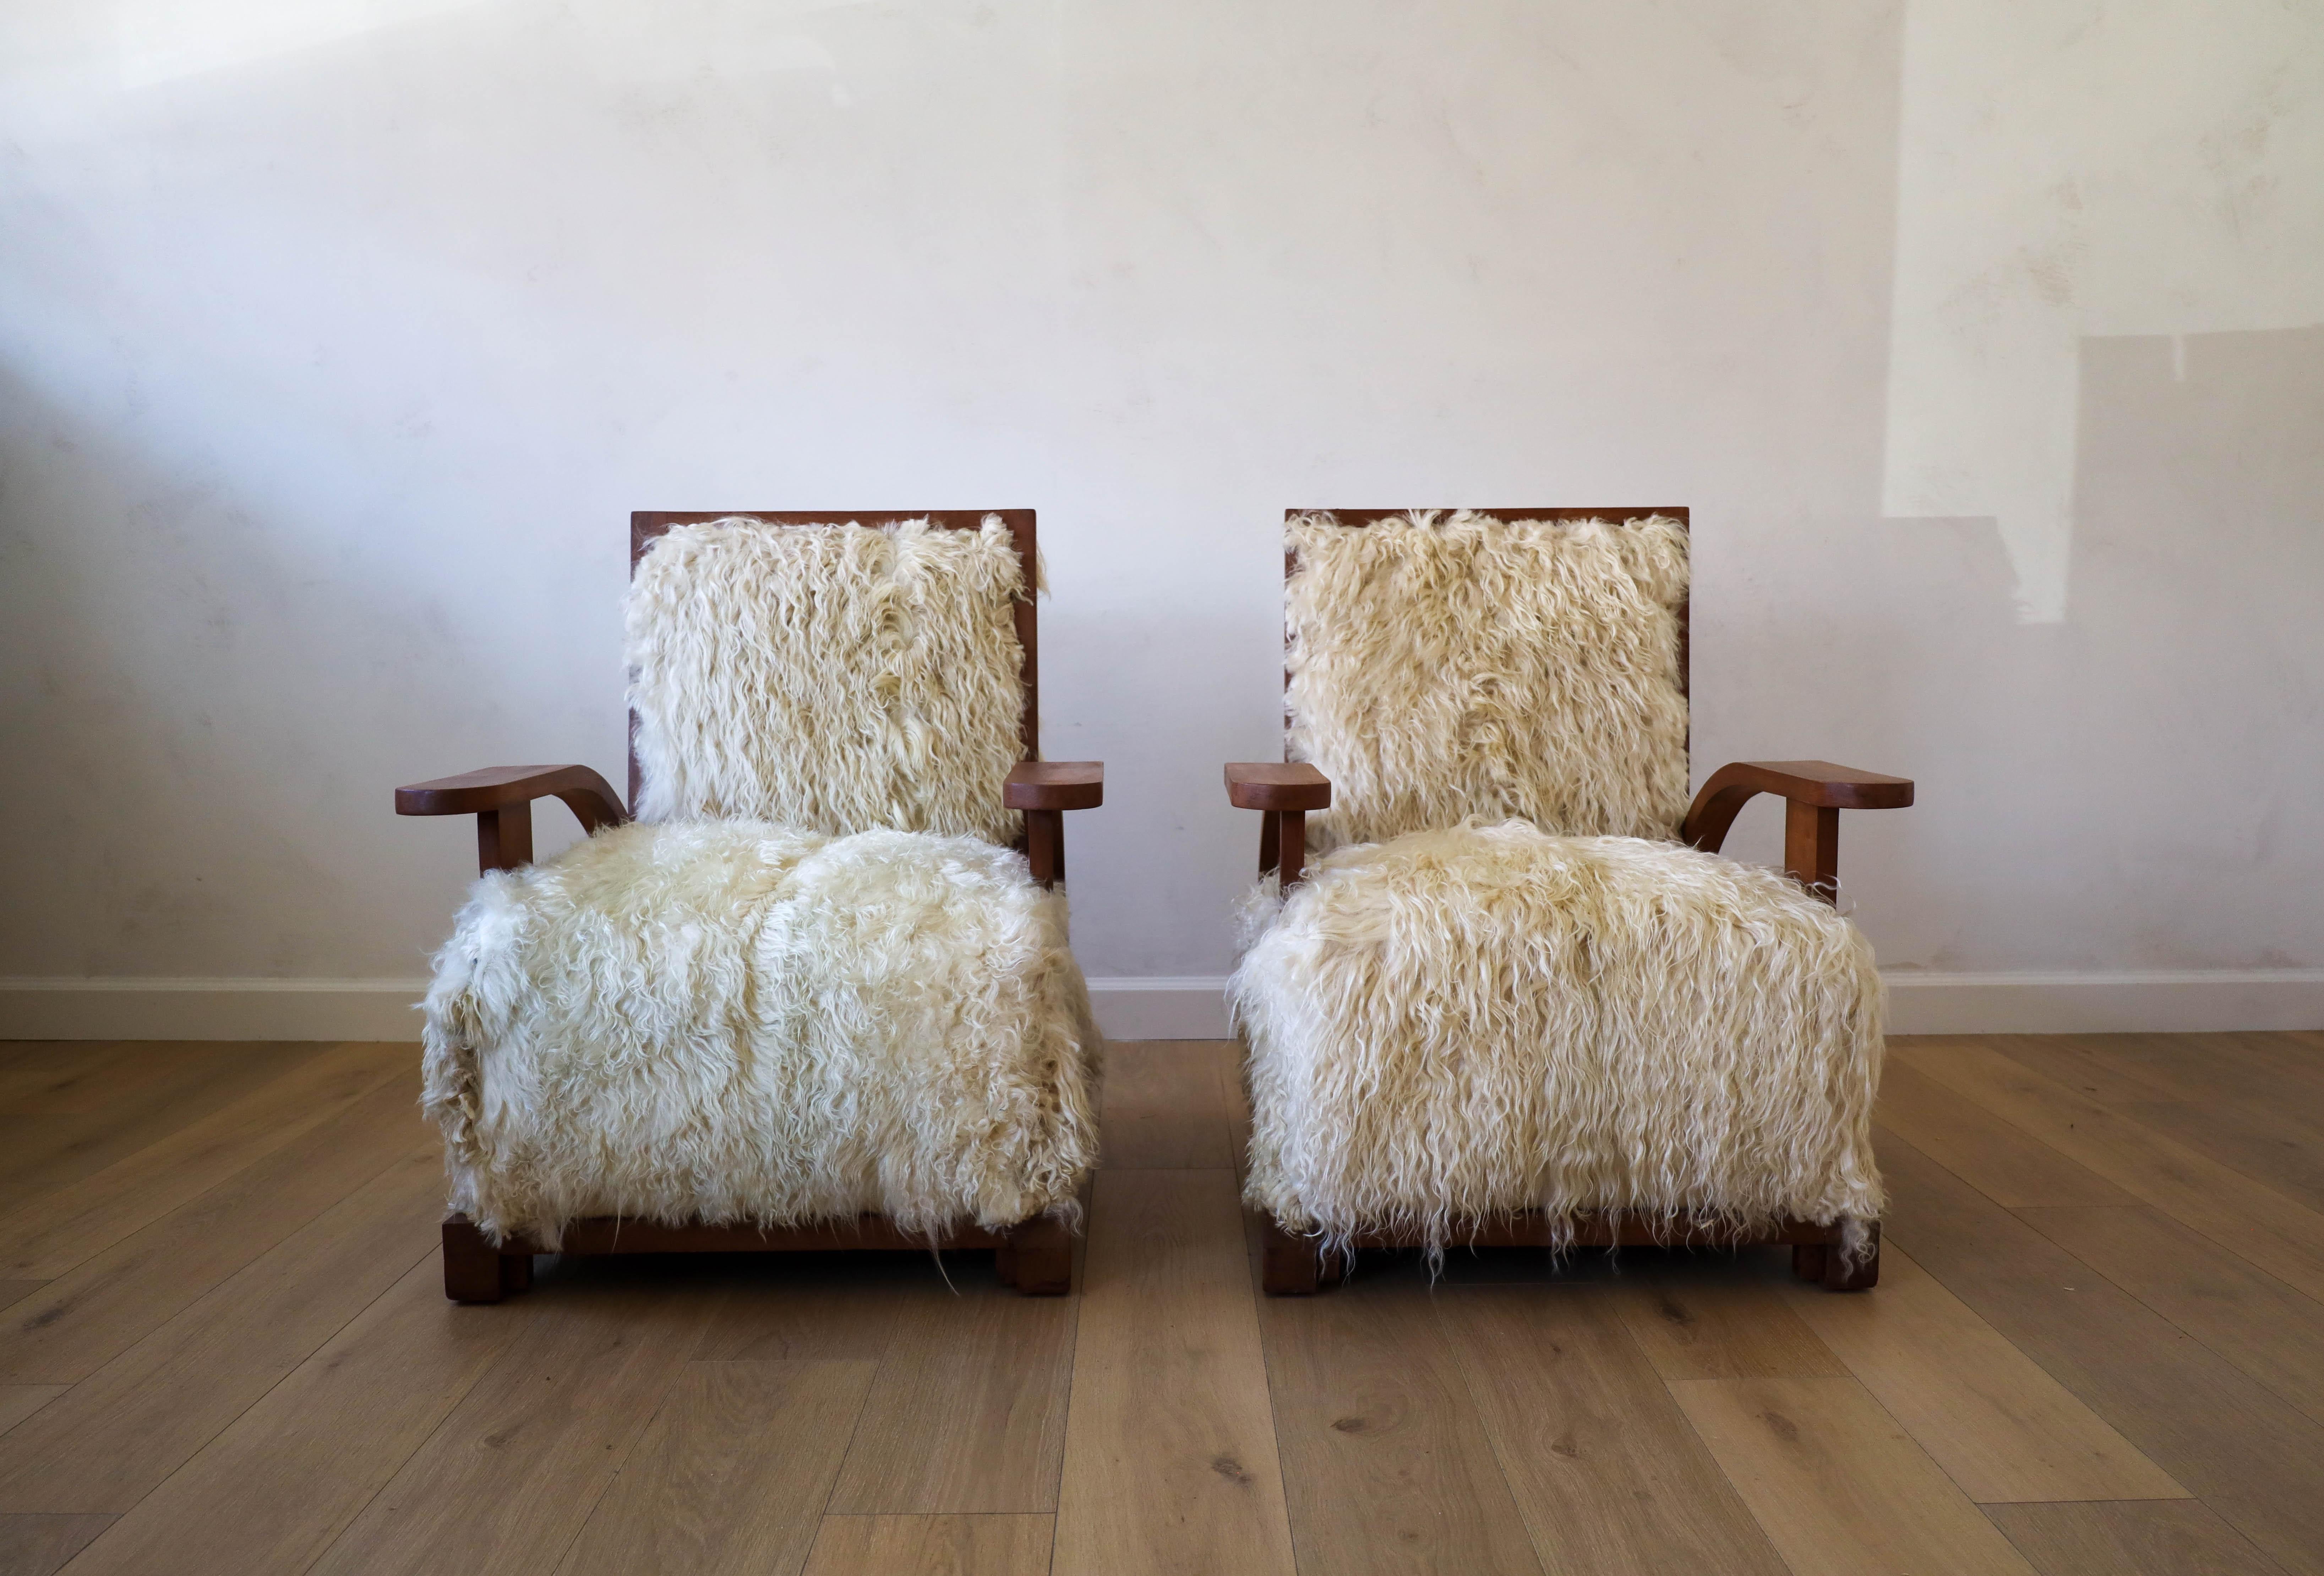 Des fauteuils club Art déco uniques en leur genre, réimaginés en peau de chèvre angora luxuriante, qui ne manqueront pas d'alimenter les conversations dans la pièce. Nous avons sélectionné à la main chaque peau individuelle qui serait la combinaison